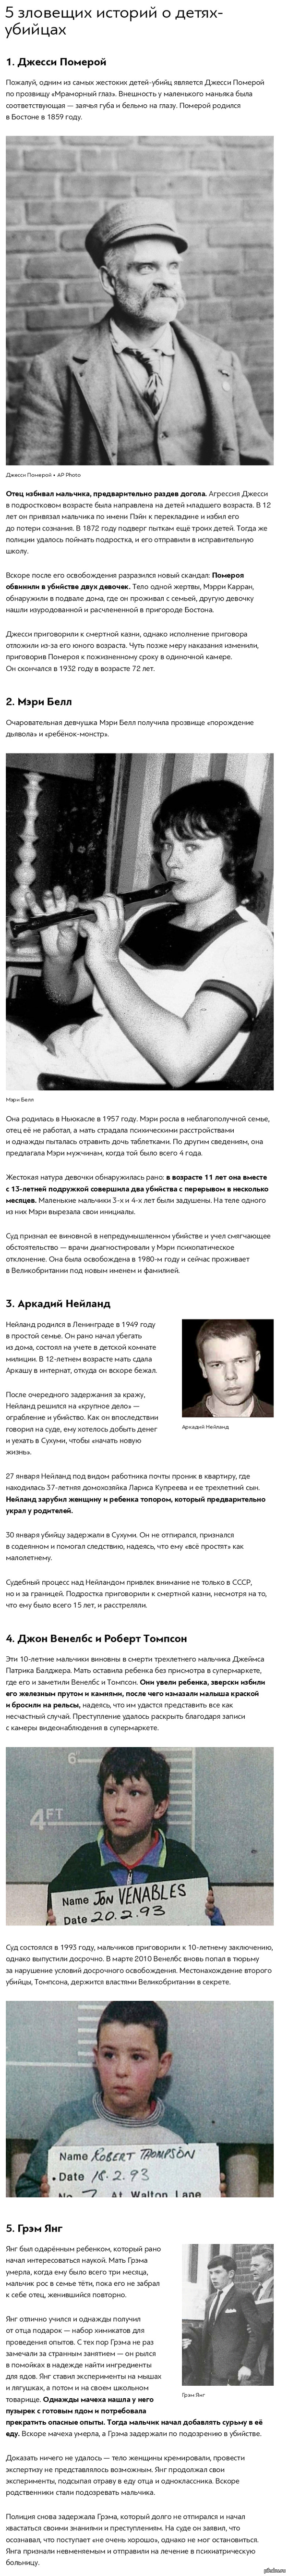 5         .  http://www.factroom.ru/life/killers-kids